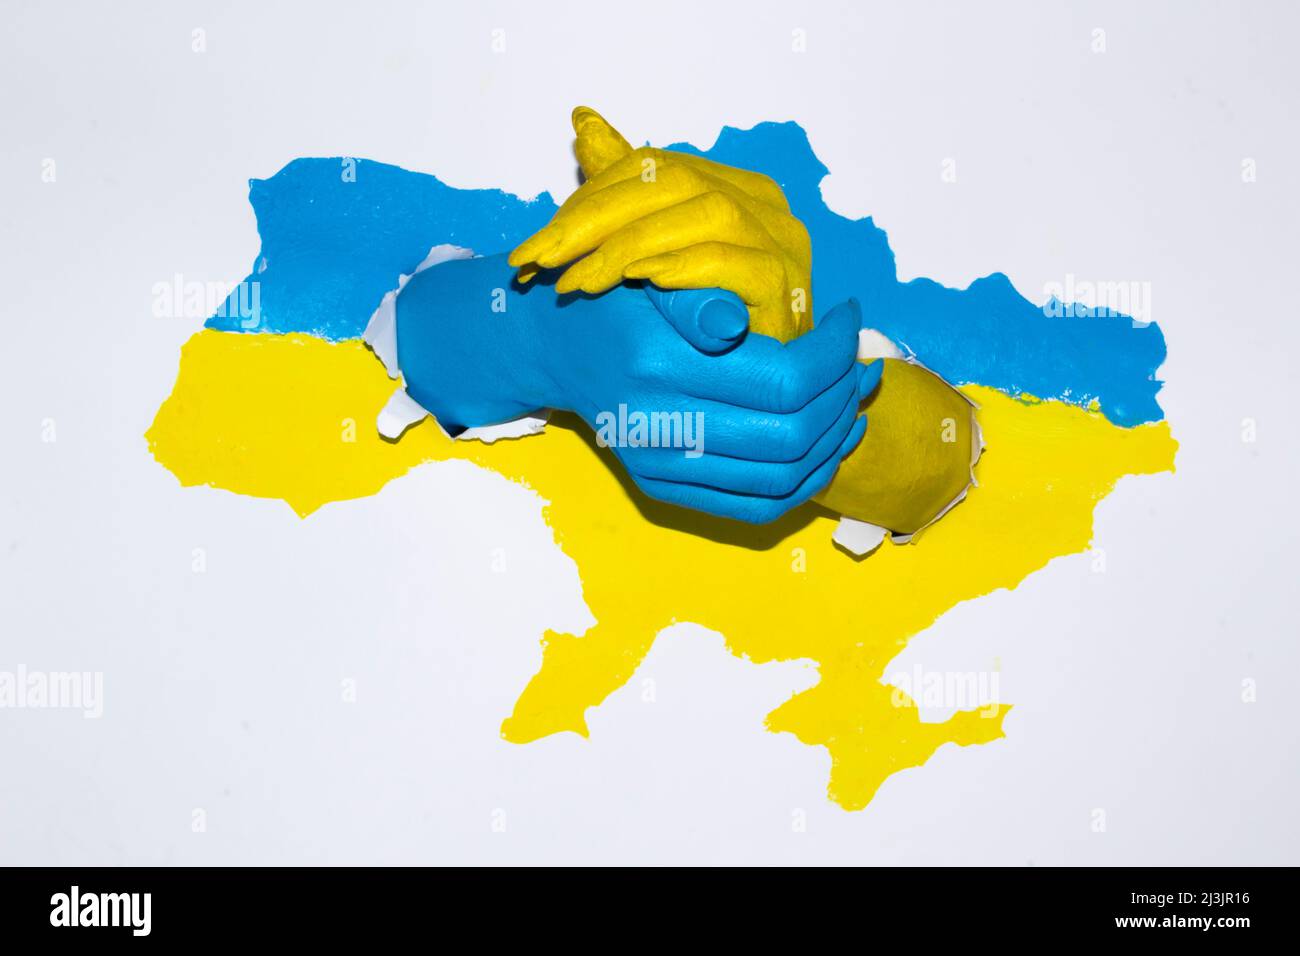 Zeichnung Karte der Ukraine in blau-gelber Farbe mit weiblichen Händen, die sich halten. Frau Hände in Farbe mit Flagge der Ukraine gemalt. Stockfoto